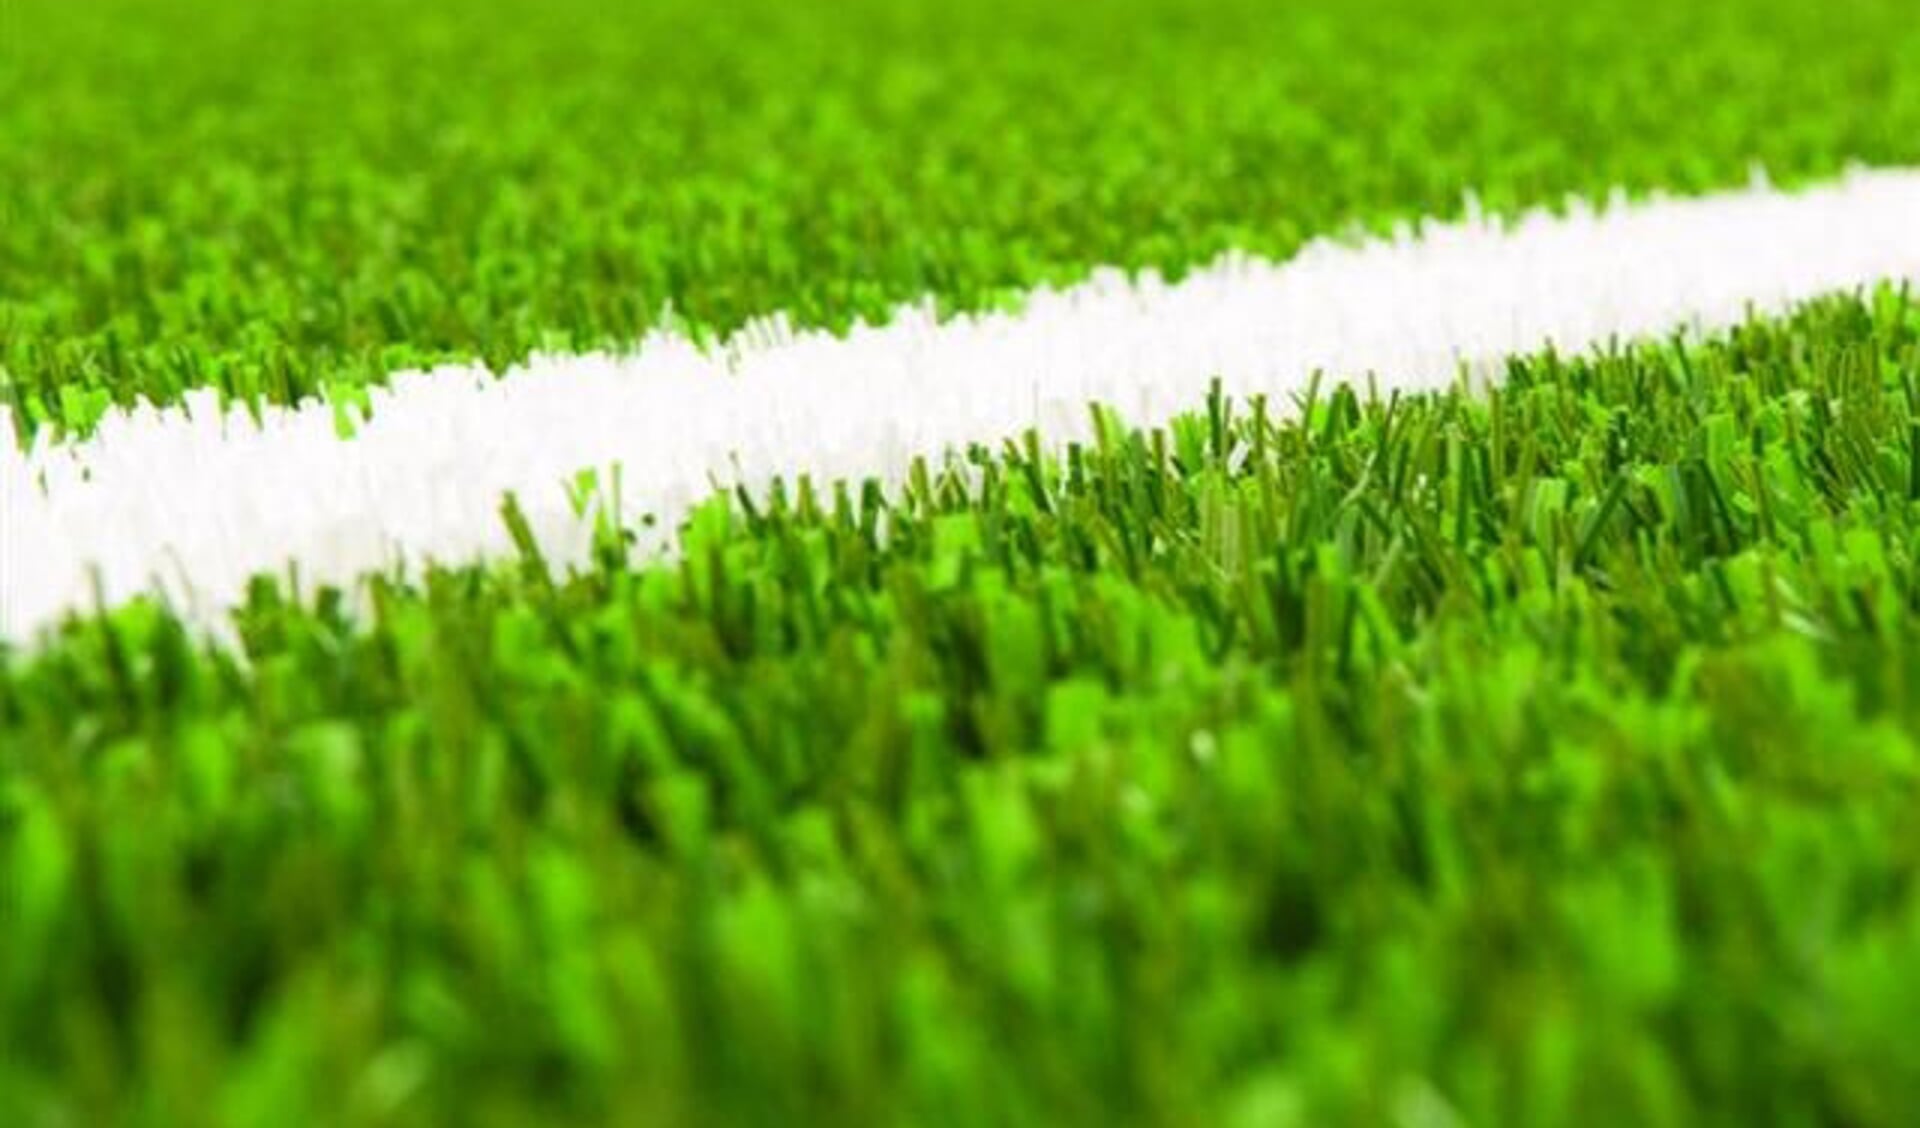 GGD: sporten op velden met rubbergranulaat is veilig en verantwoord